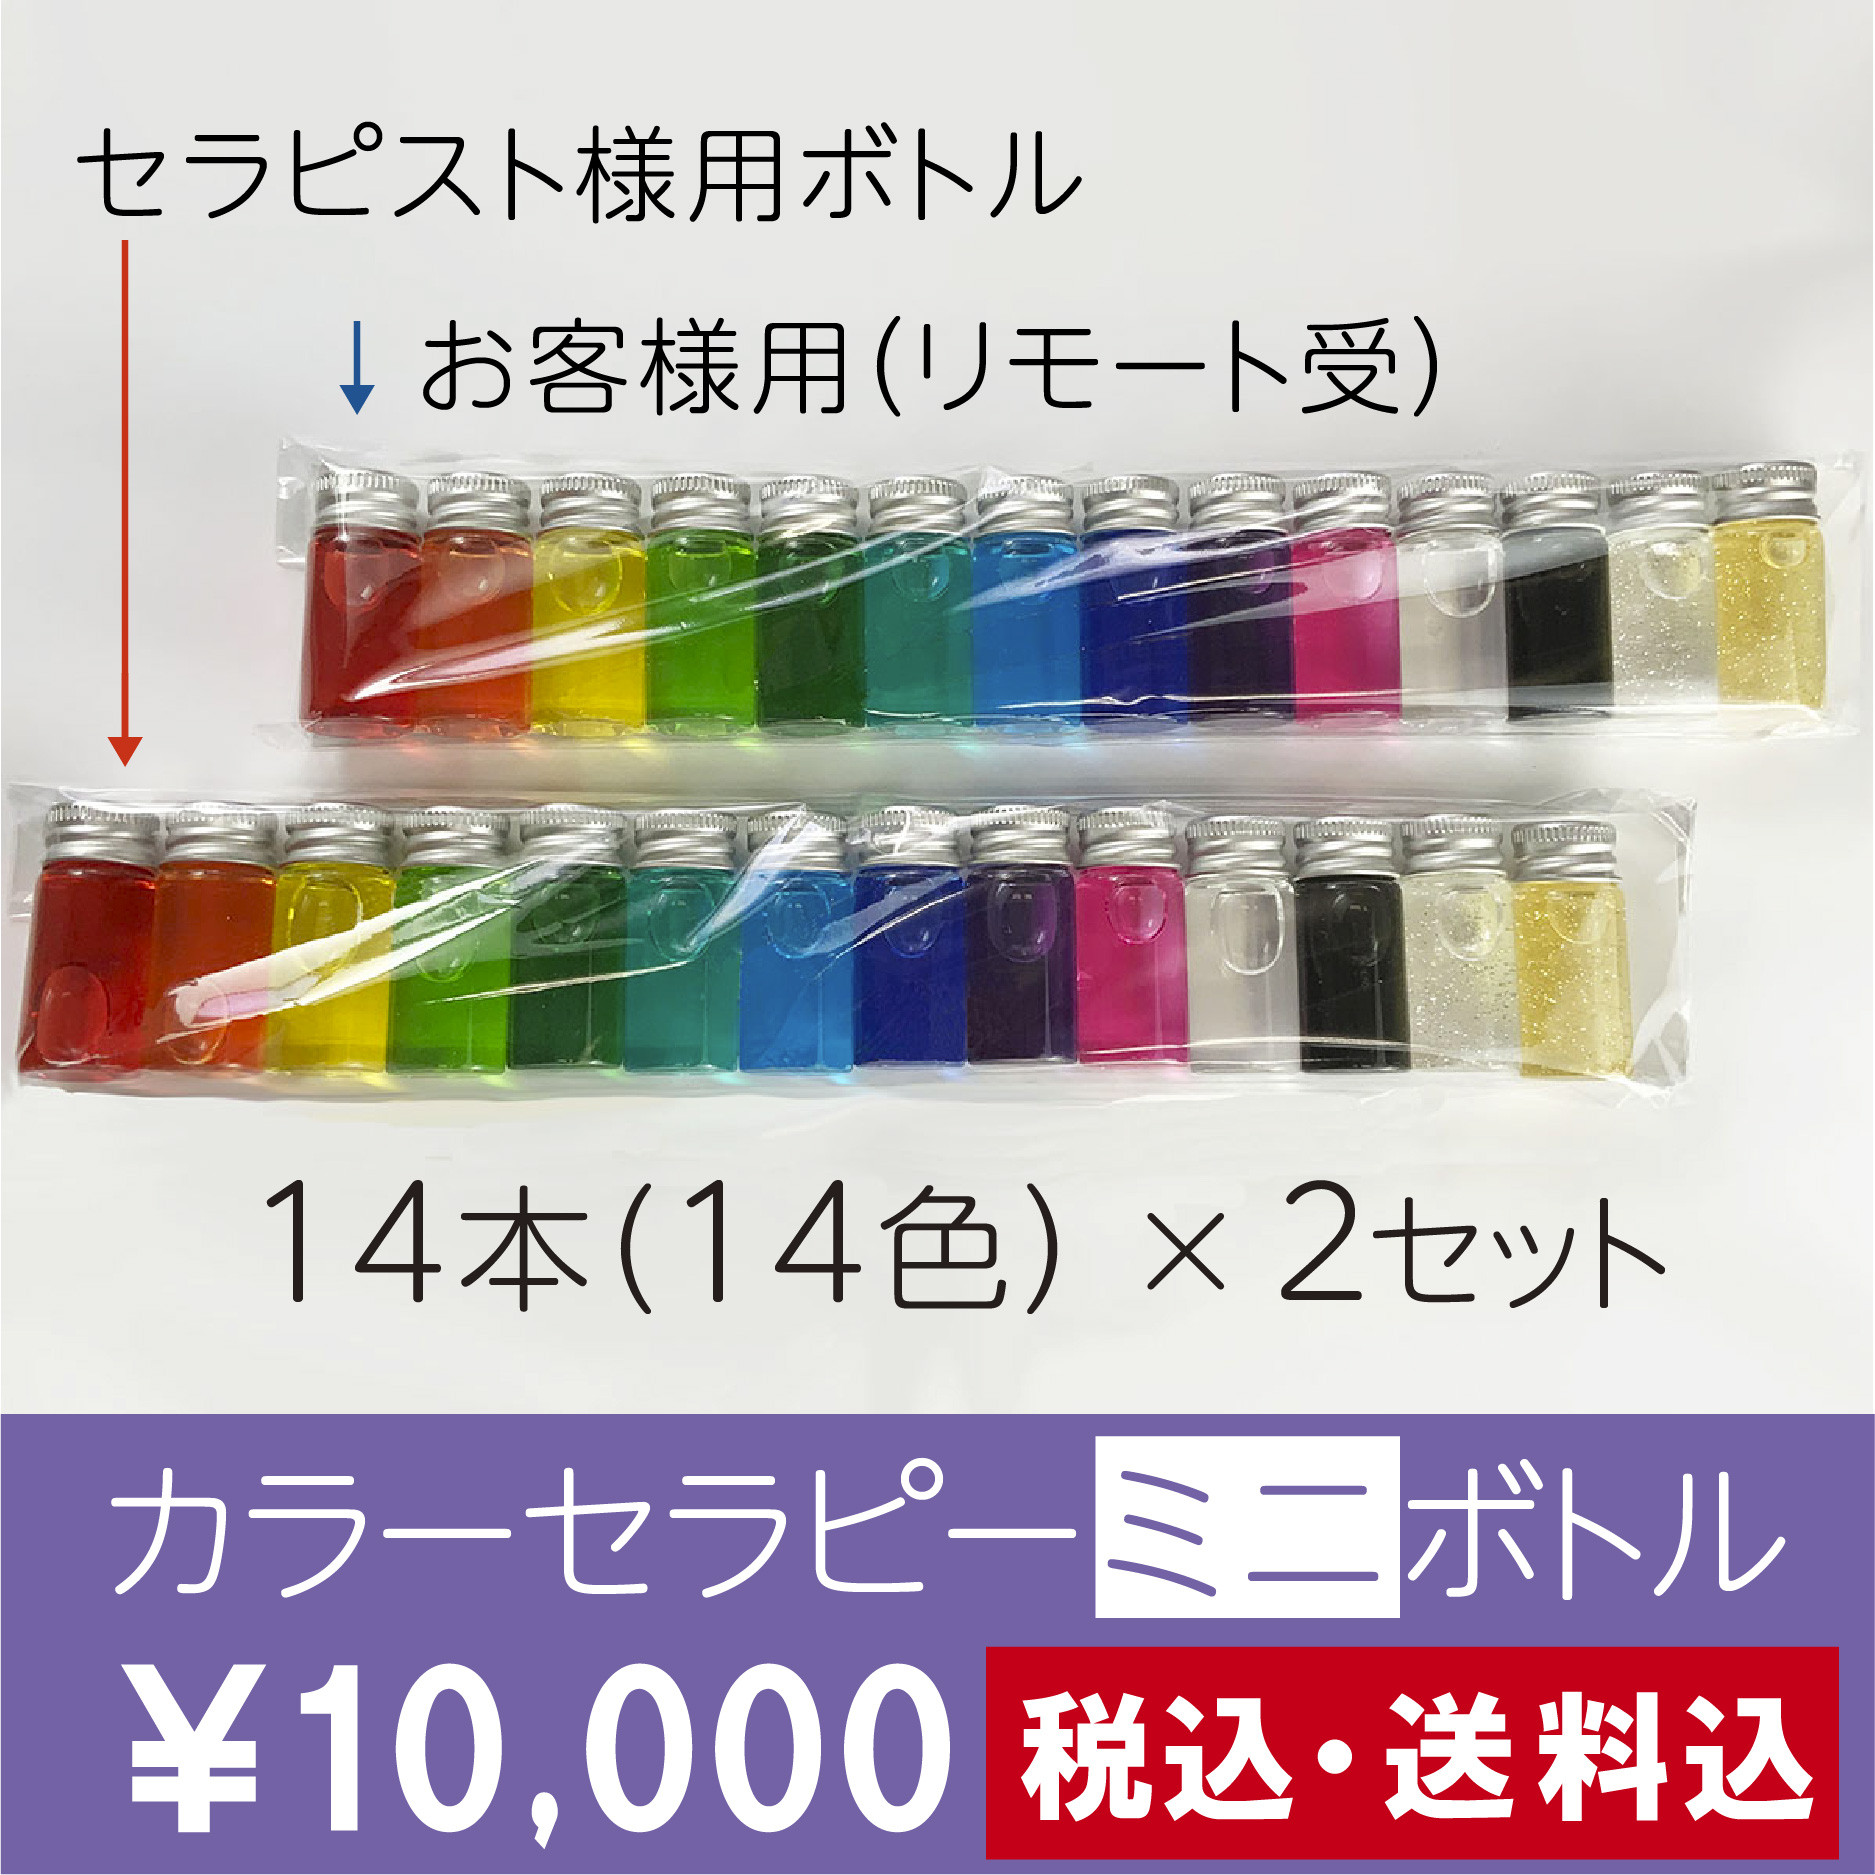 本日発売★リモート用カラーセラピーミニボトルセット【14本×2セット入】